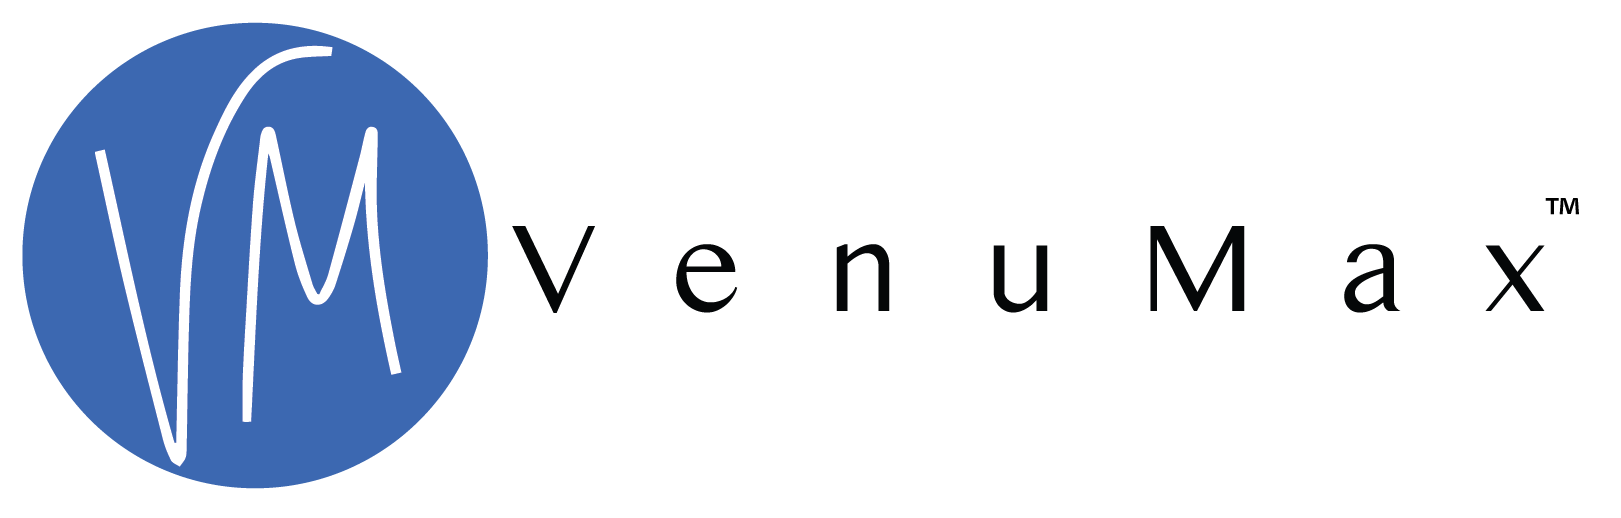 VenuMax - Solution de gestion des sites - mbsPartners